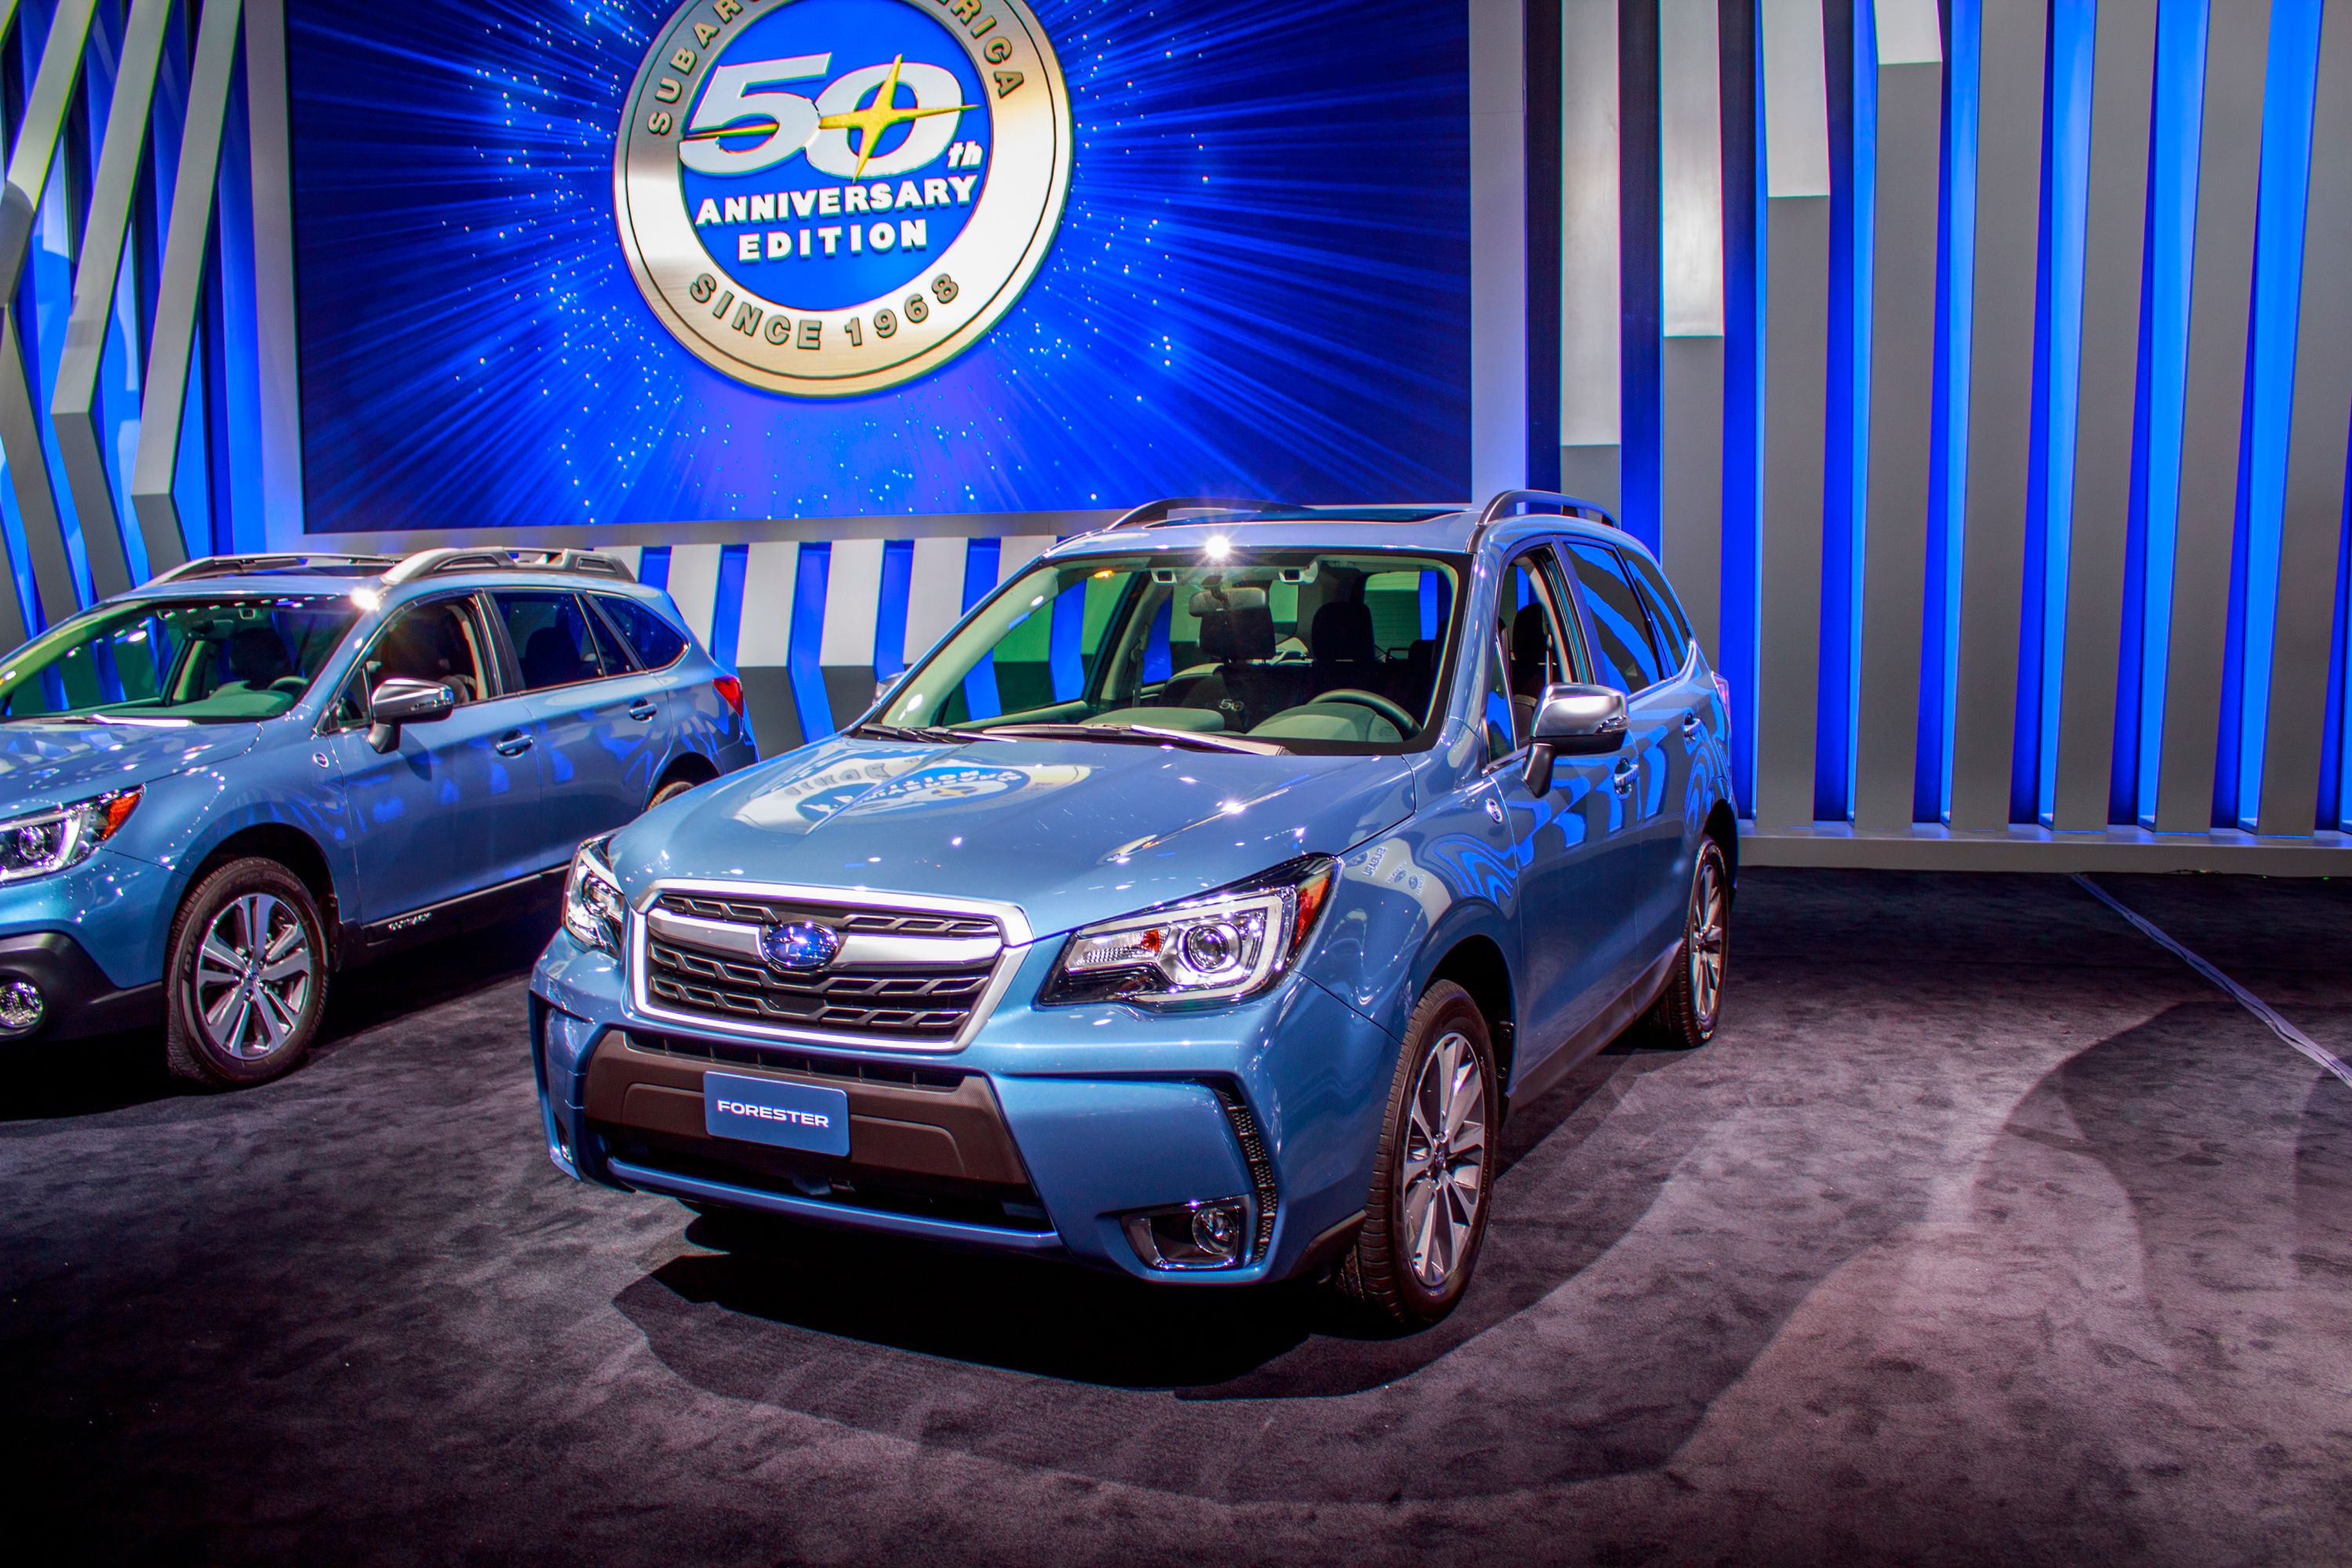 2018 Subaru Forester 50th Anniversary Edition